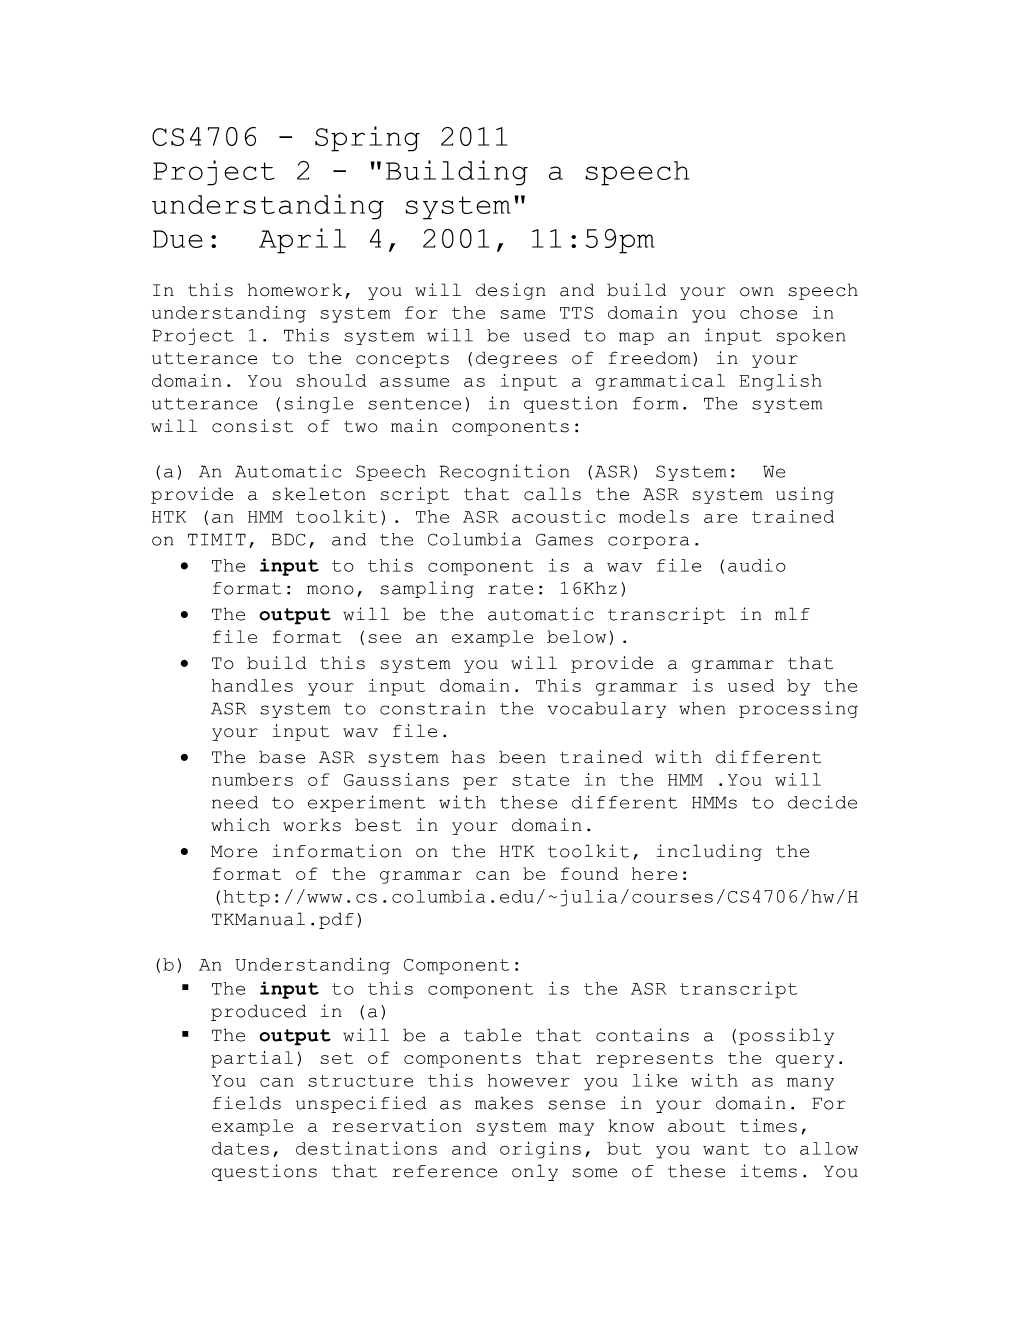 Project 2 - Building a Speech Understanding System